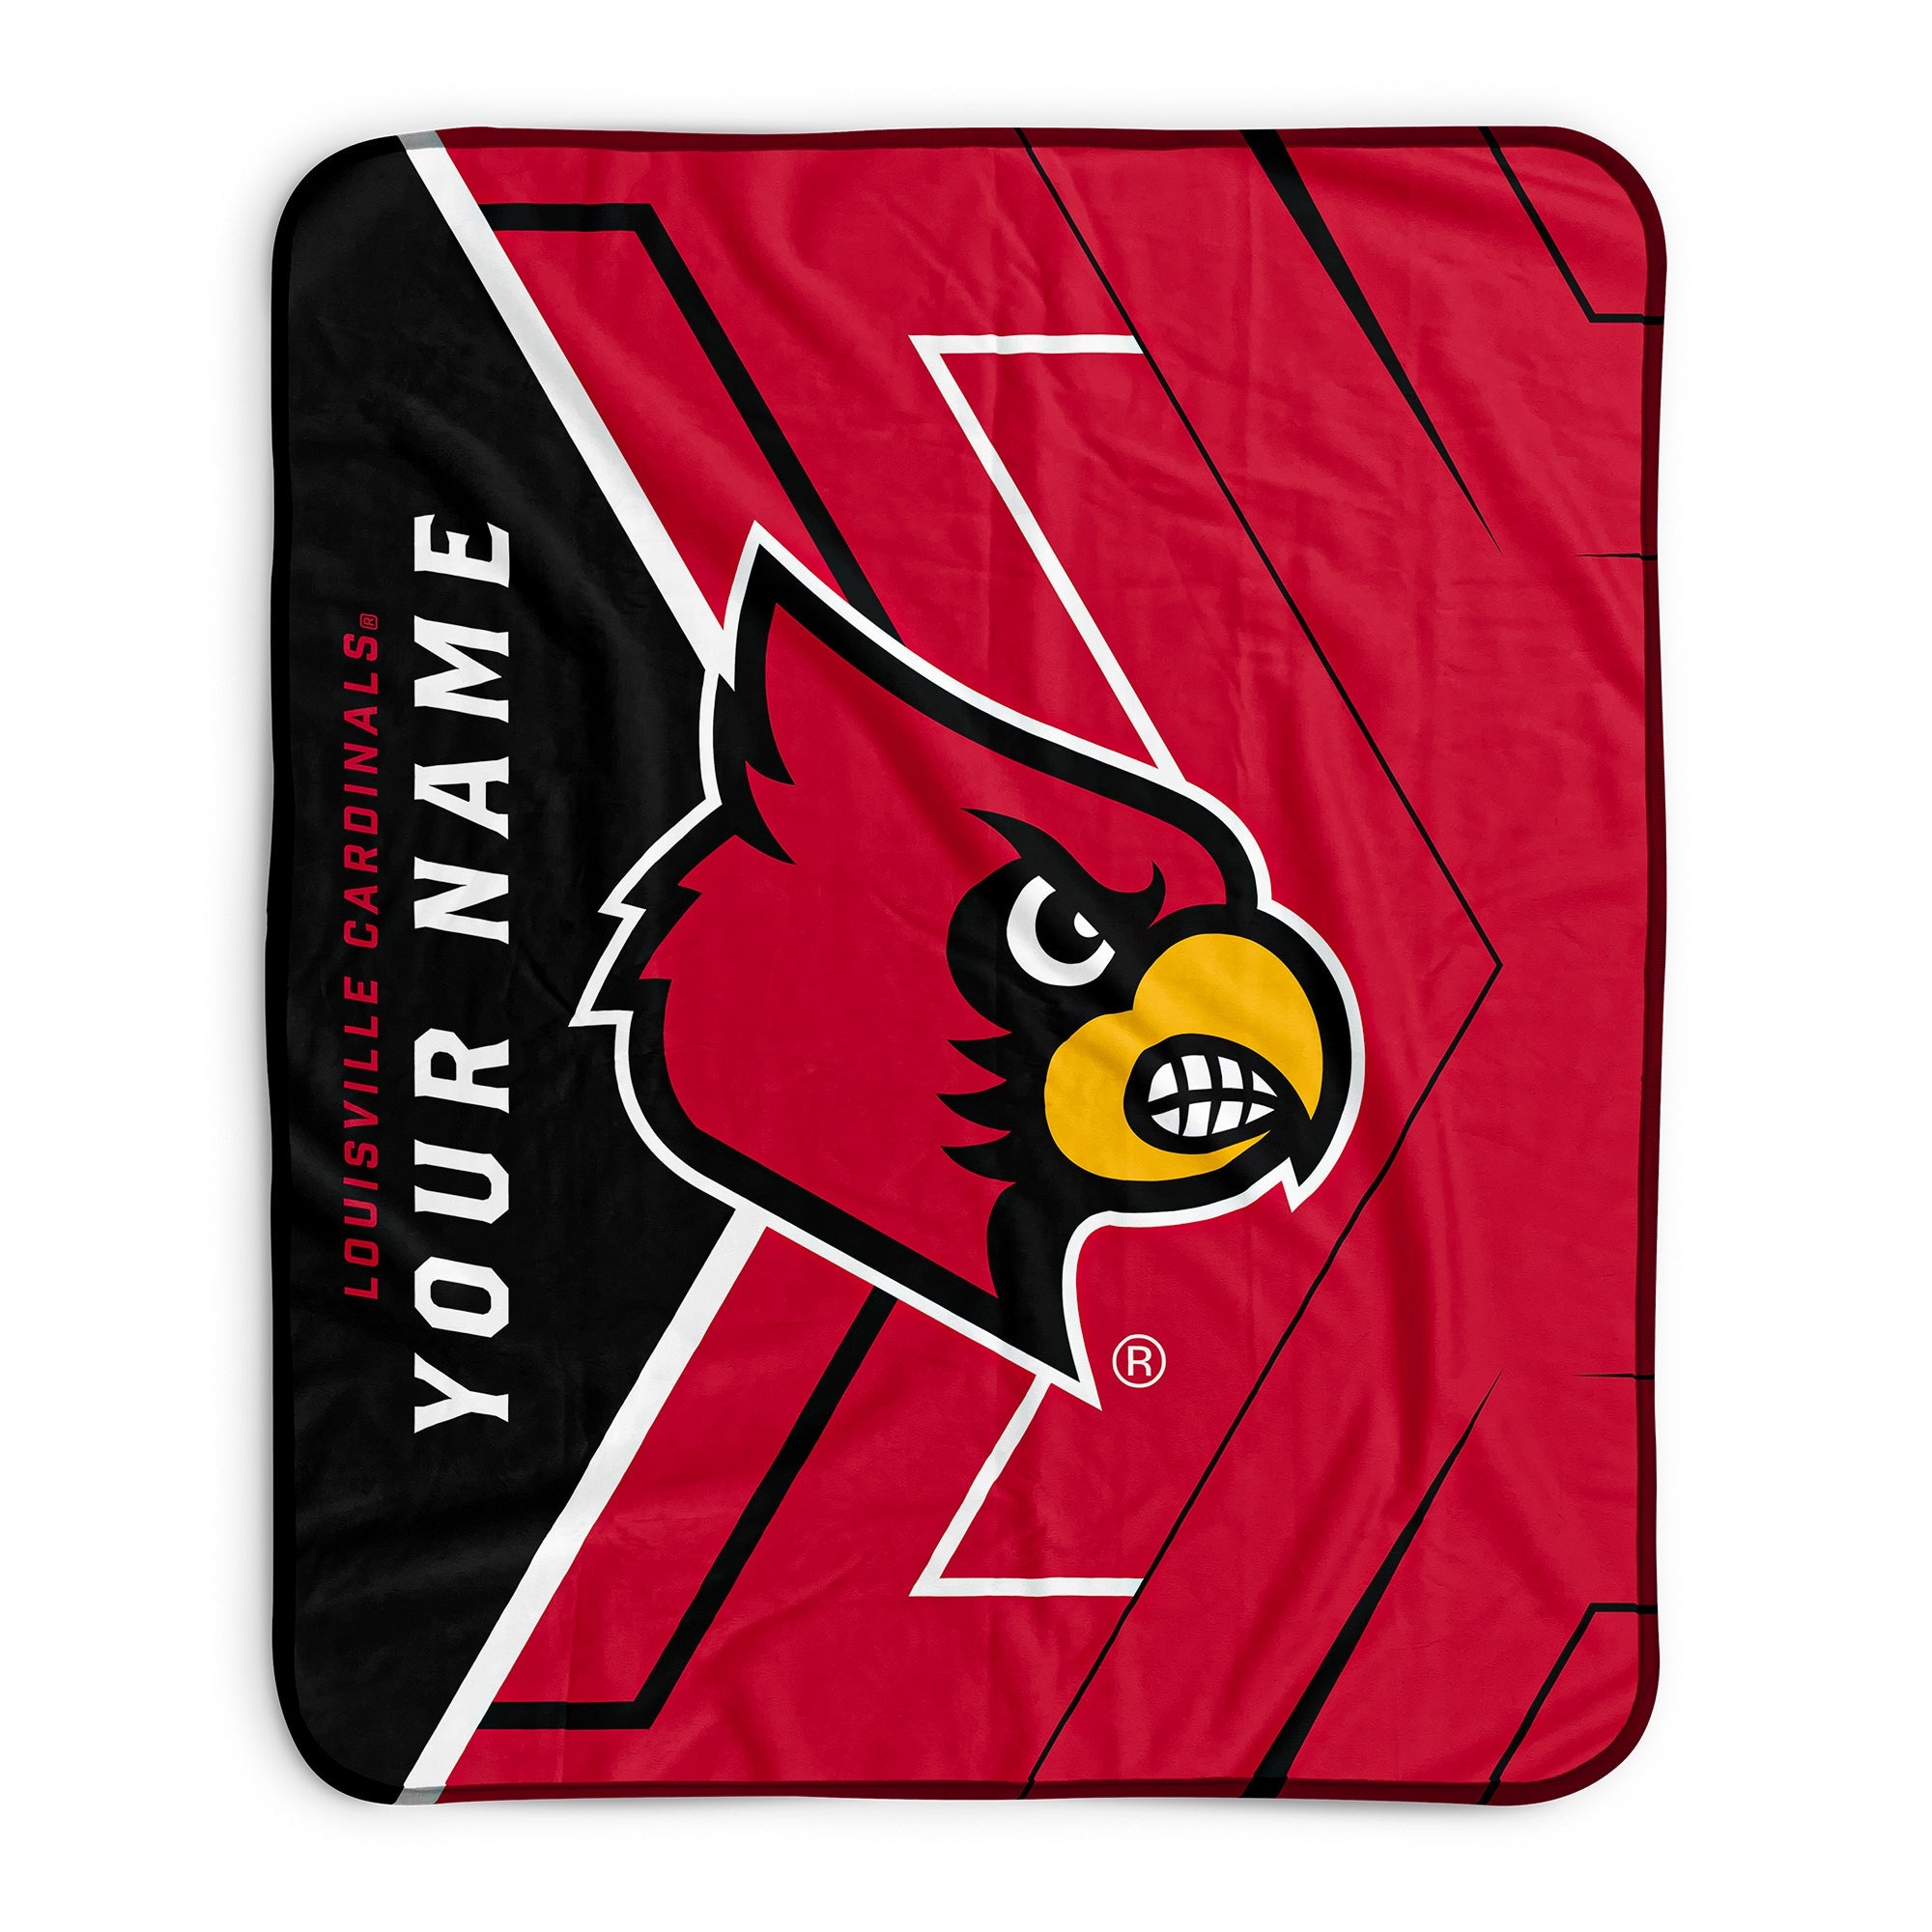 Brand New NCAA Louisville Cardinals Large Soft Fleece Throw